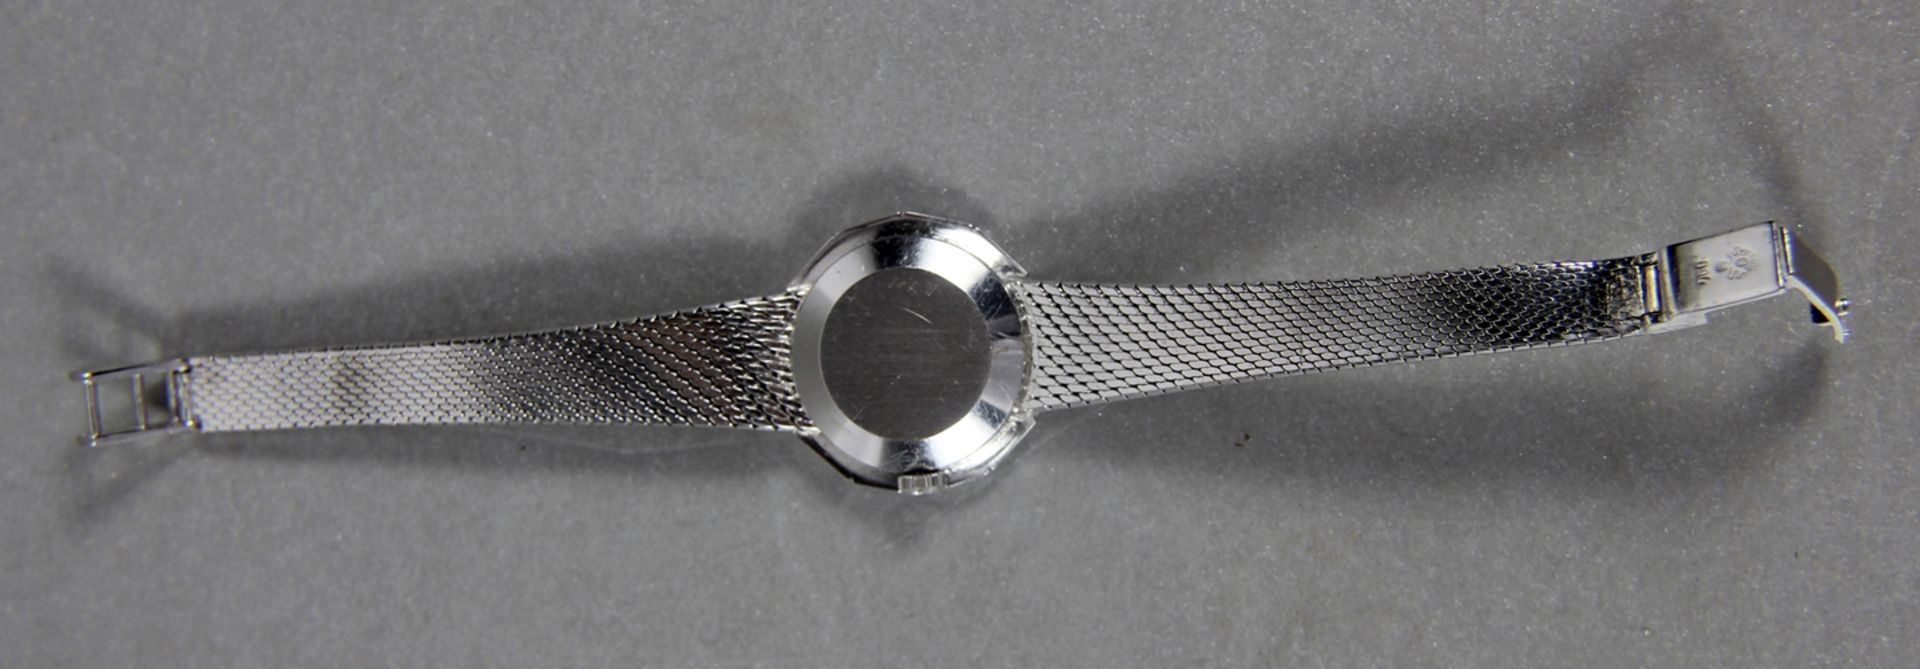 Rolex-Damenarmbanduhr - Bild 3 aus 5